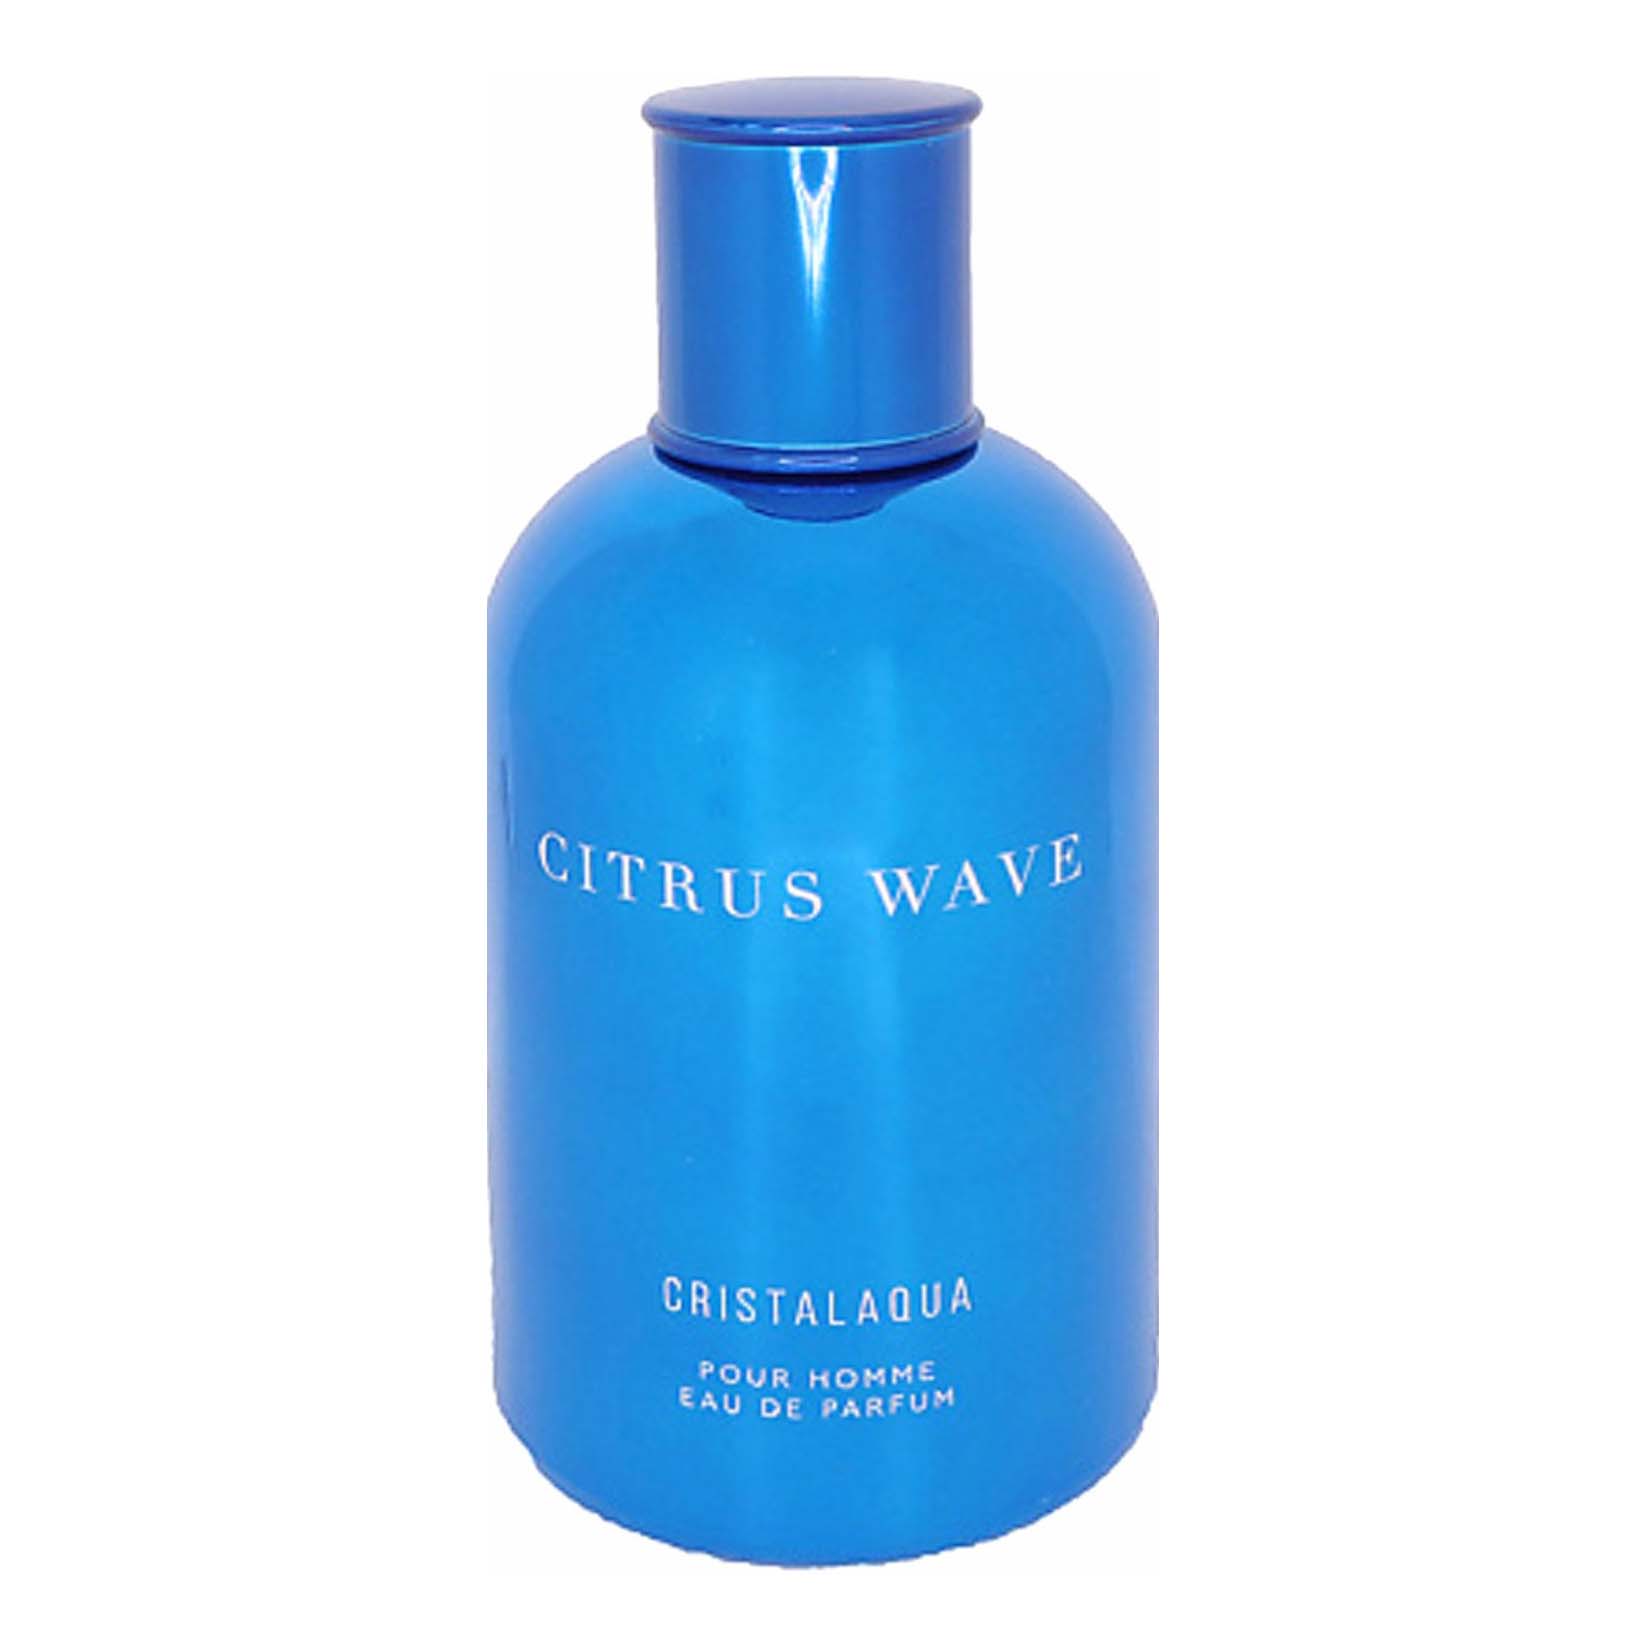 Парфюмерная вода Cristalaqua Citrus wave мужская 100 мл crystalaqua cristalaqua manly 100